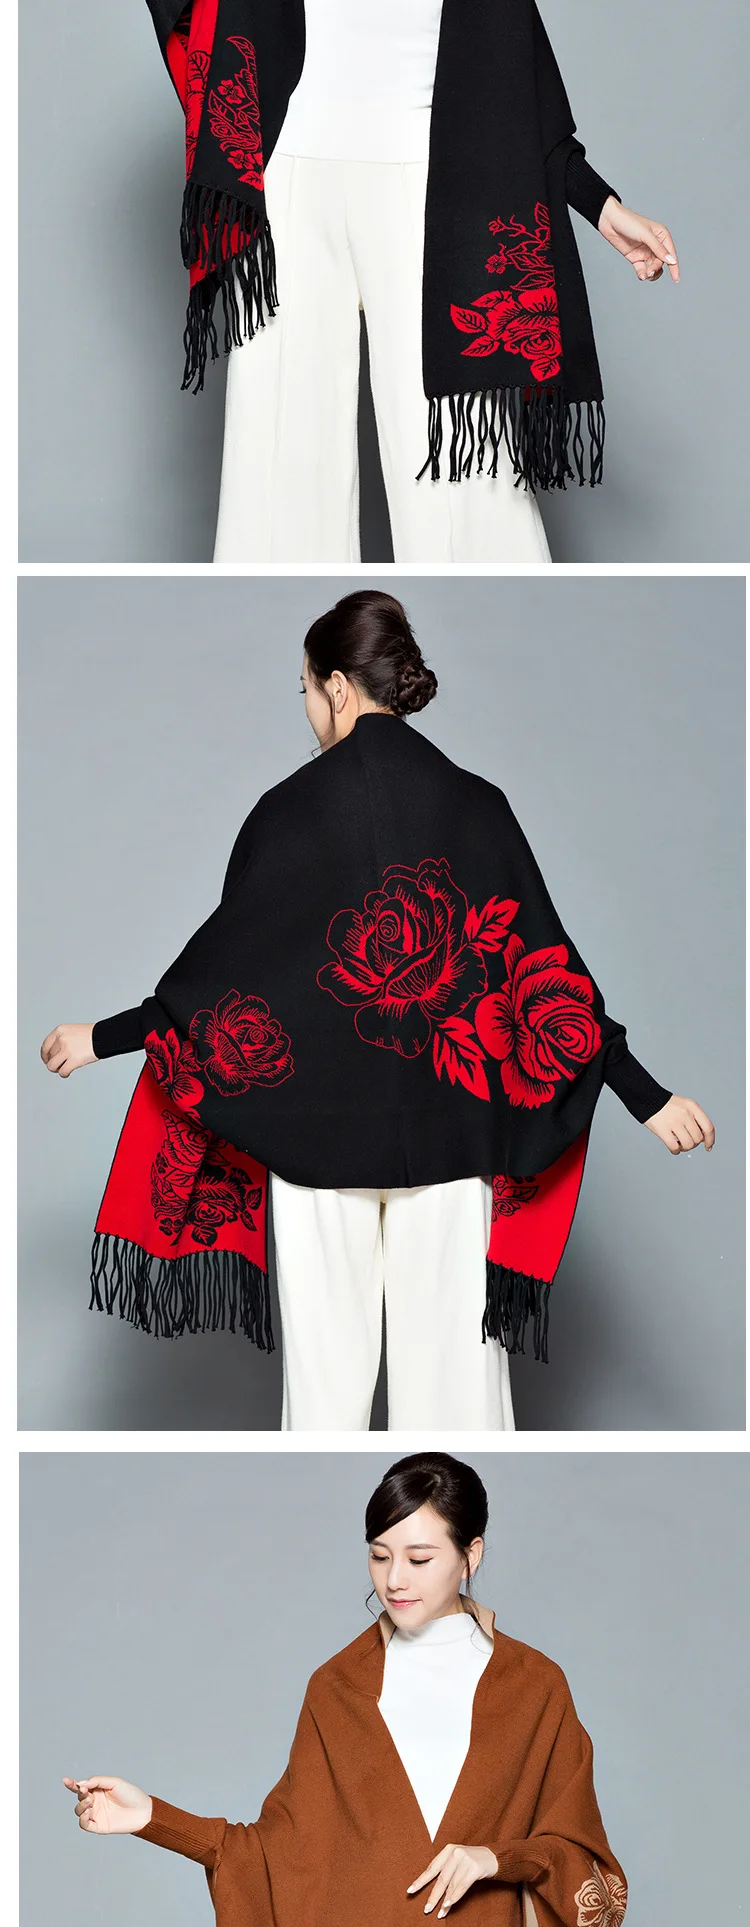 Женская шаль большого размера с рукавами пончо толстые зимние шали и обертывания для дам пашмины теплые Feminino Цветочные пончо и накидки